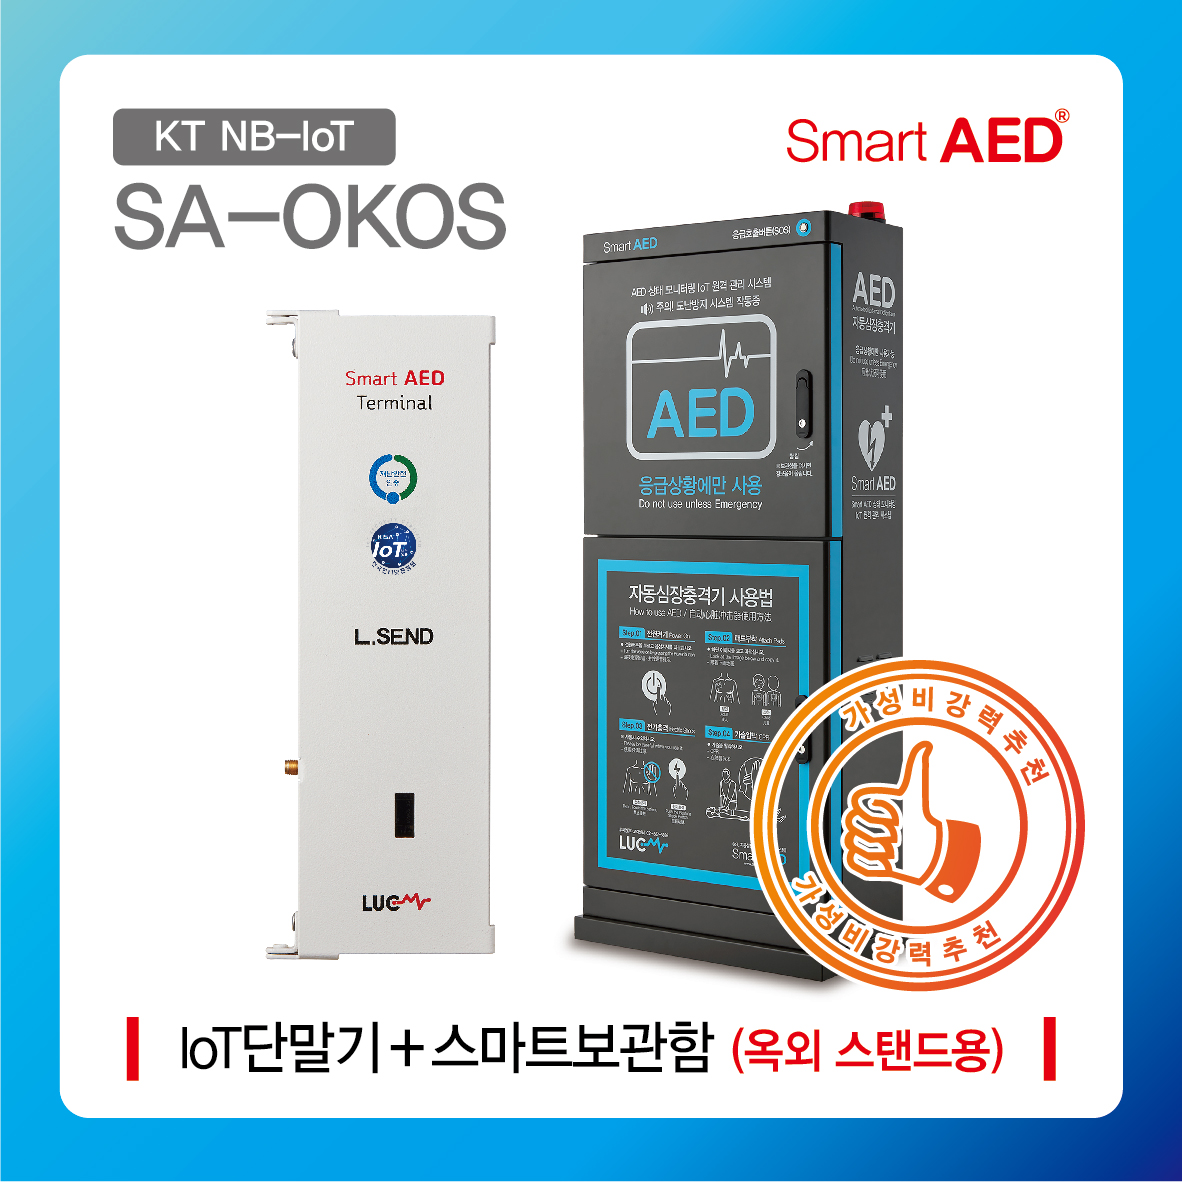 [ SA-OKOS ] 스마트 AED 통합모니터링 장치 및 보관함 (옥외 스탠드형)